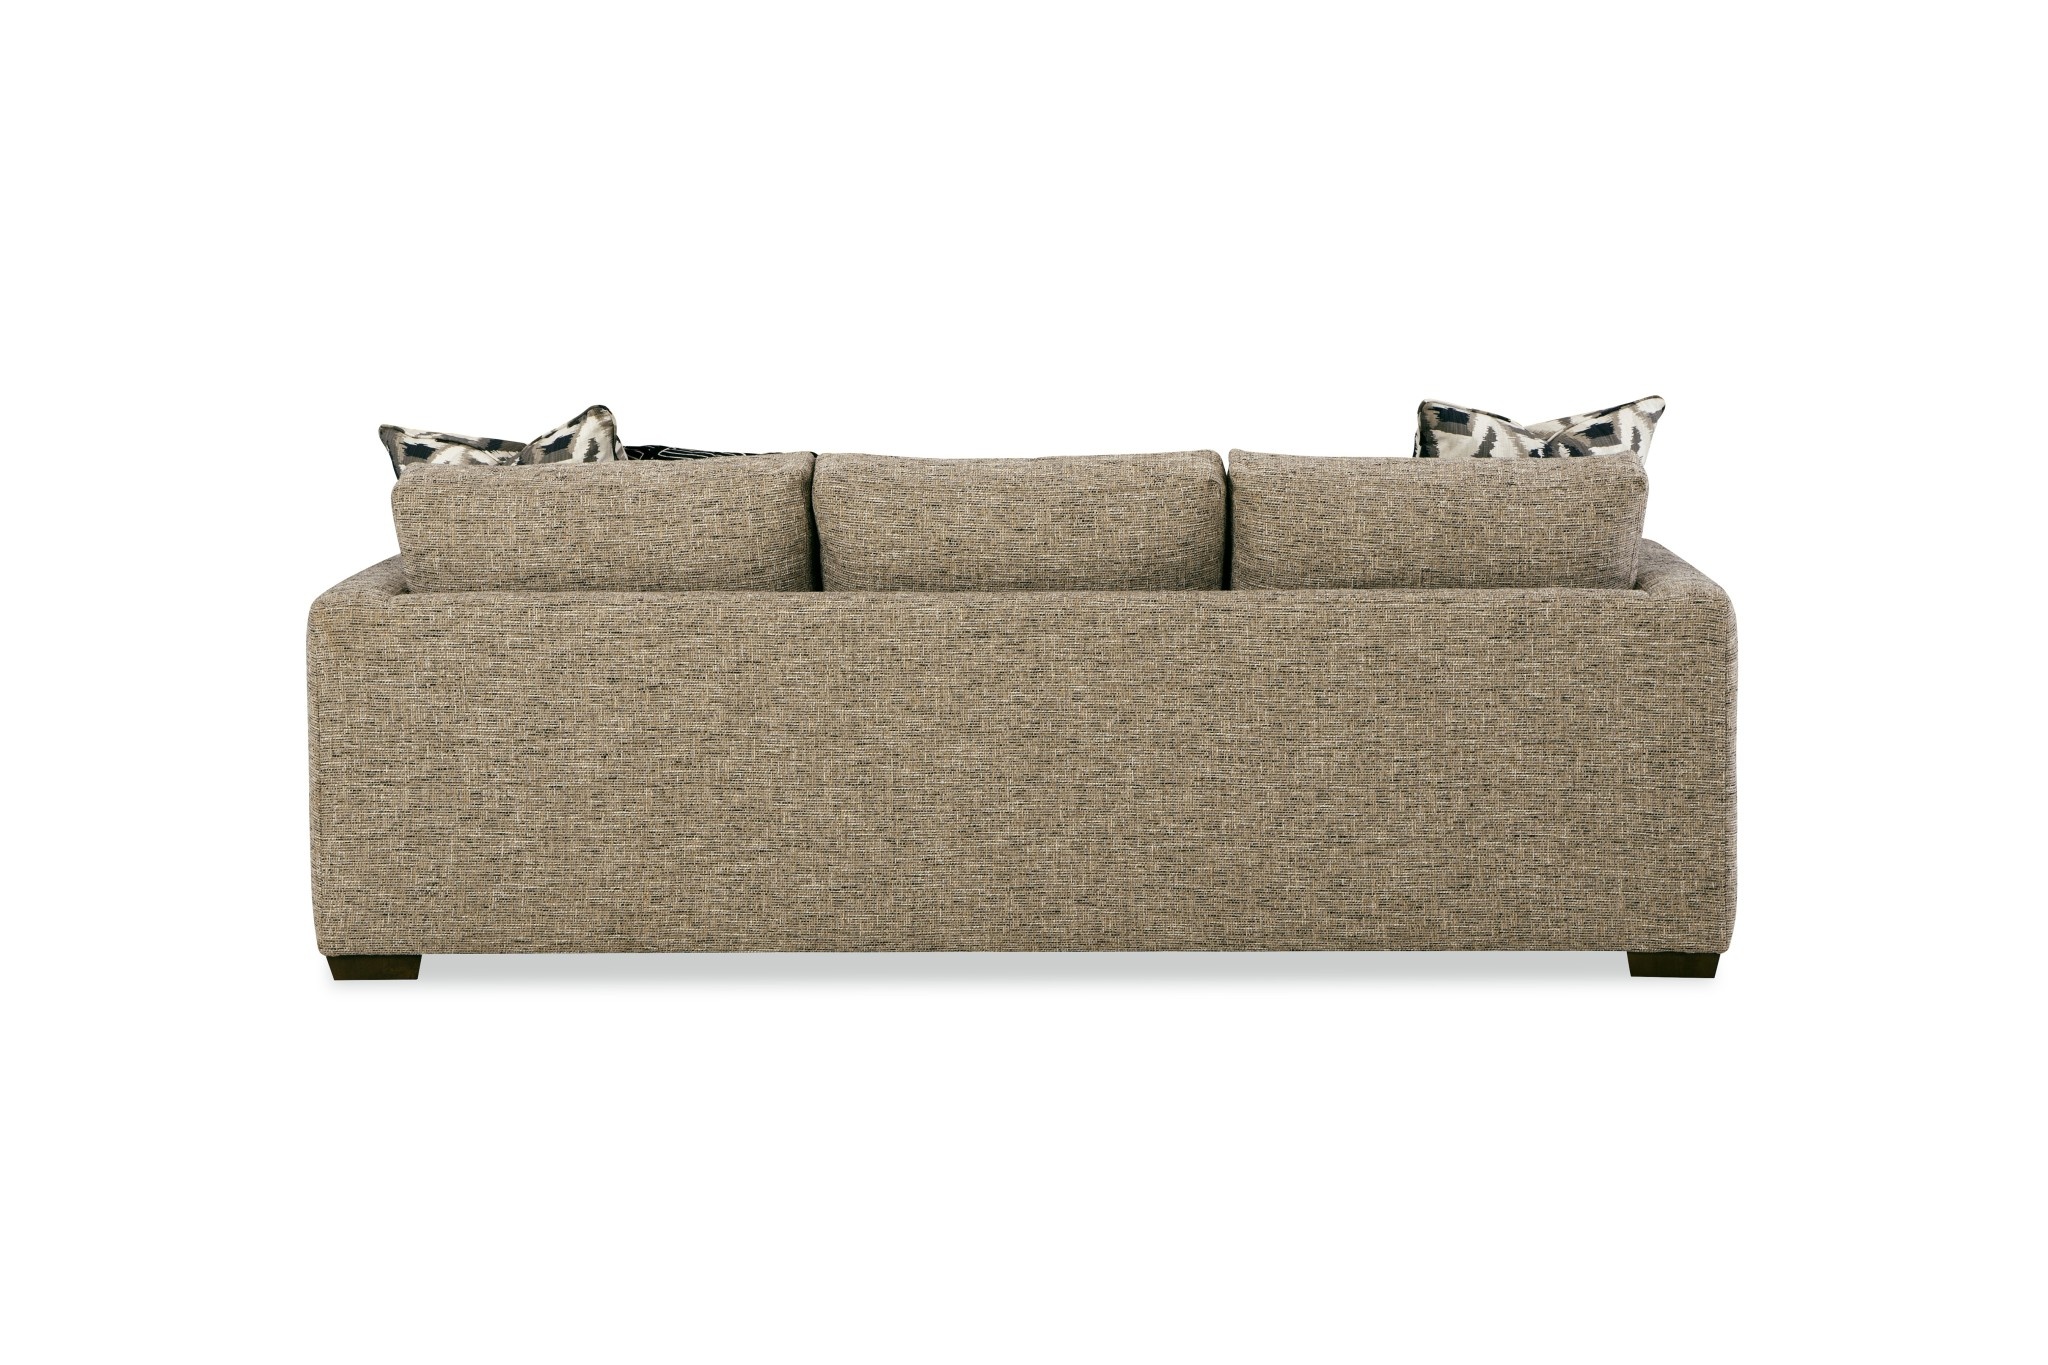 Craftmaster Furniture 7927 Bench Seat Sofa